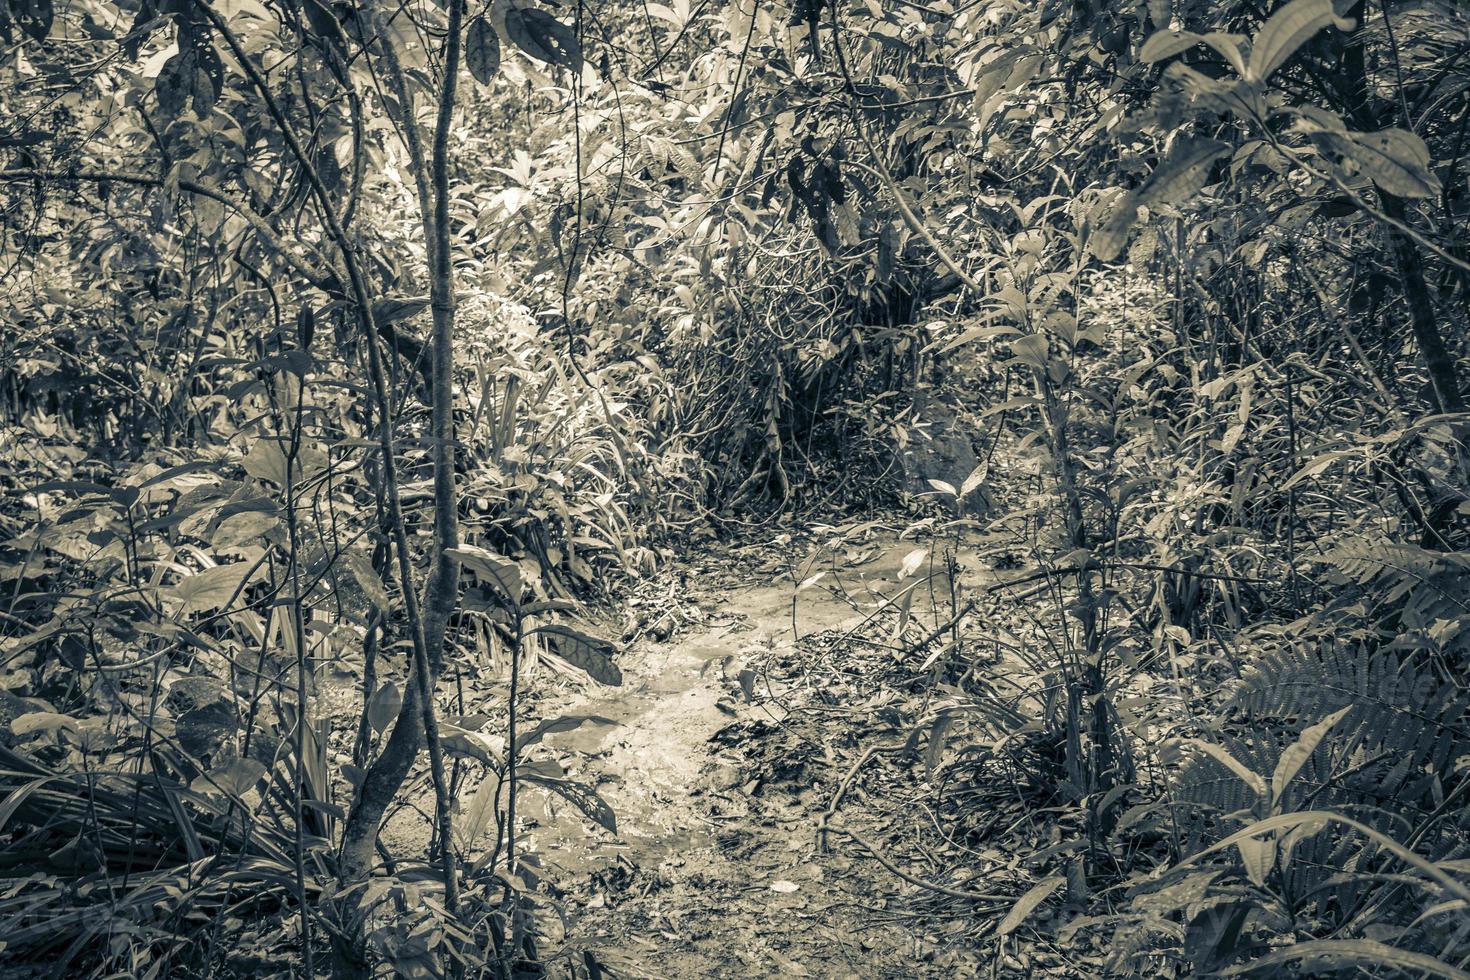 trilha de caminhada em floresta tropical natural ilha grande brazil. foto